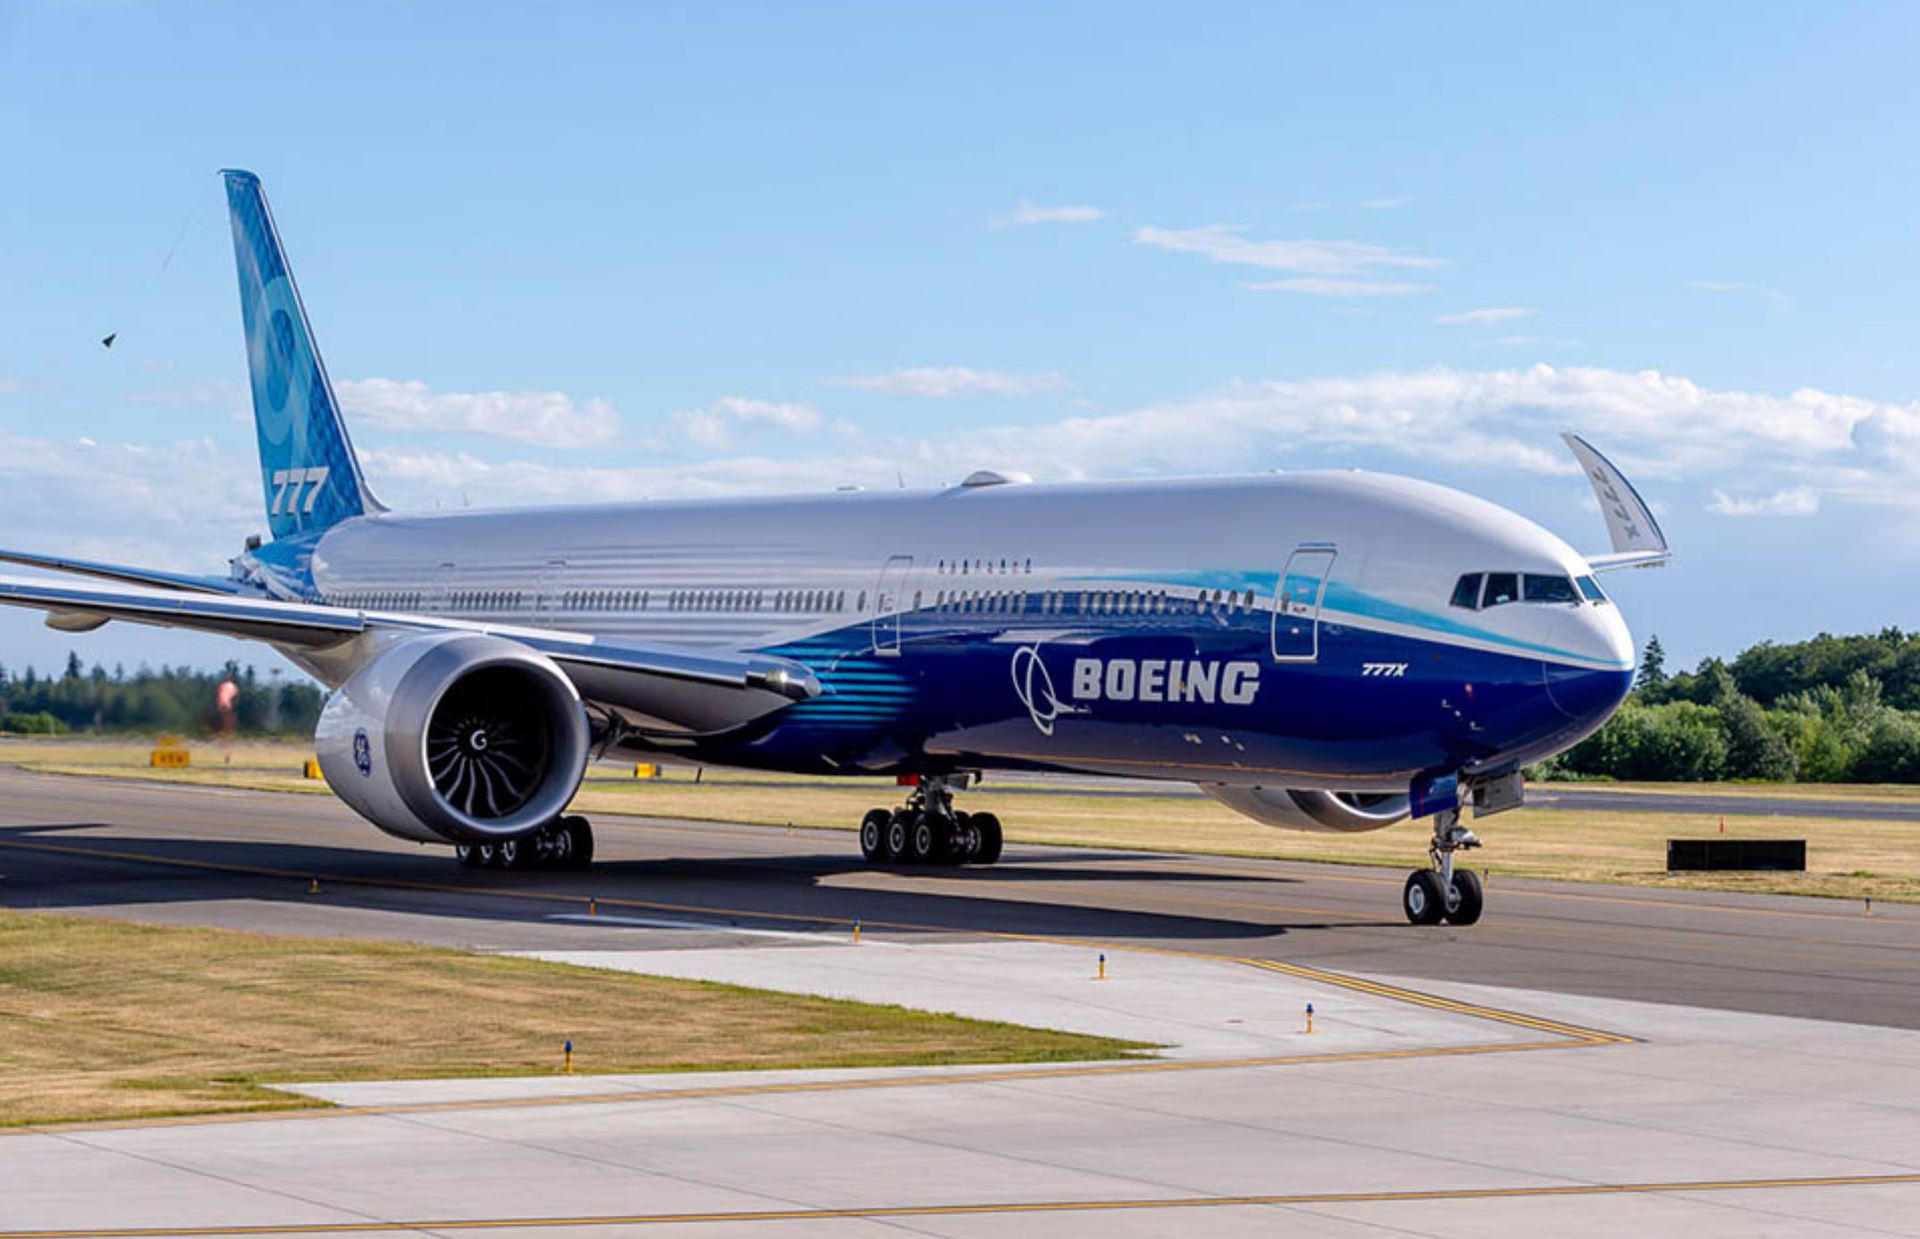 Boeing 777X first flight (Credit: Boeing)